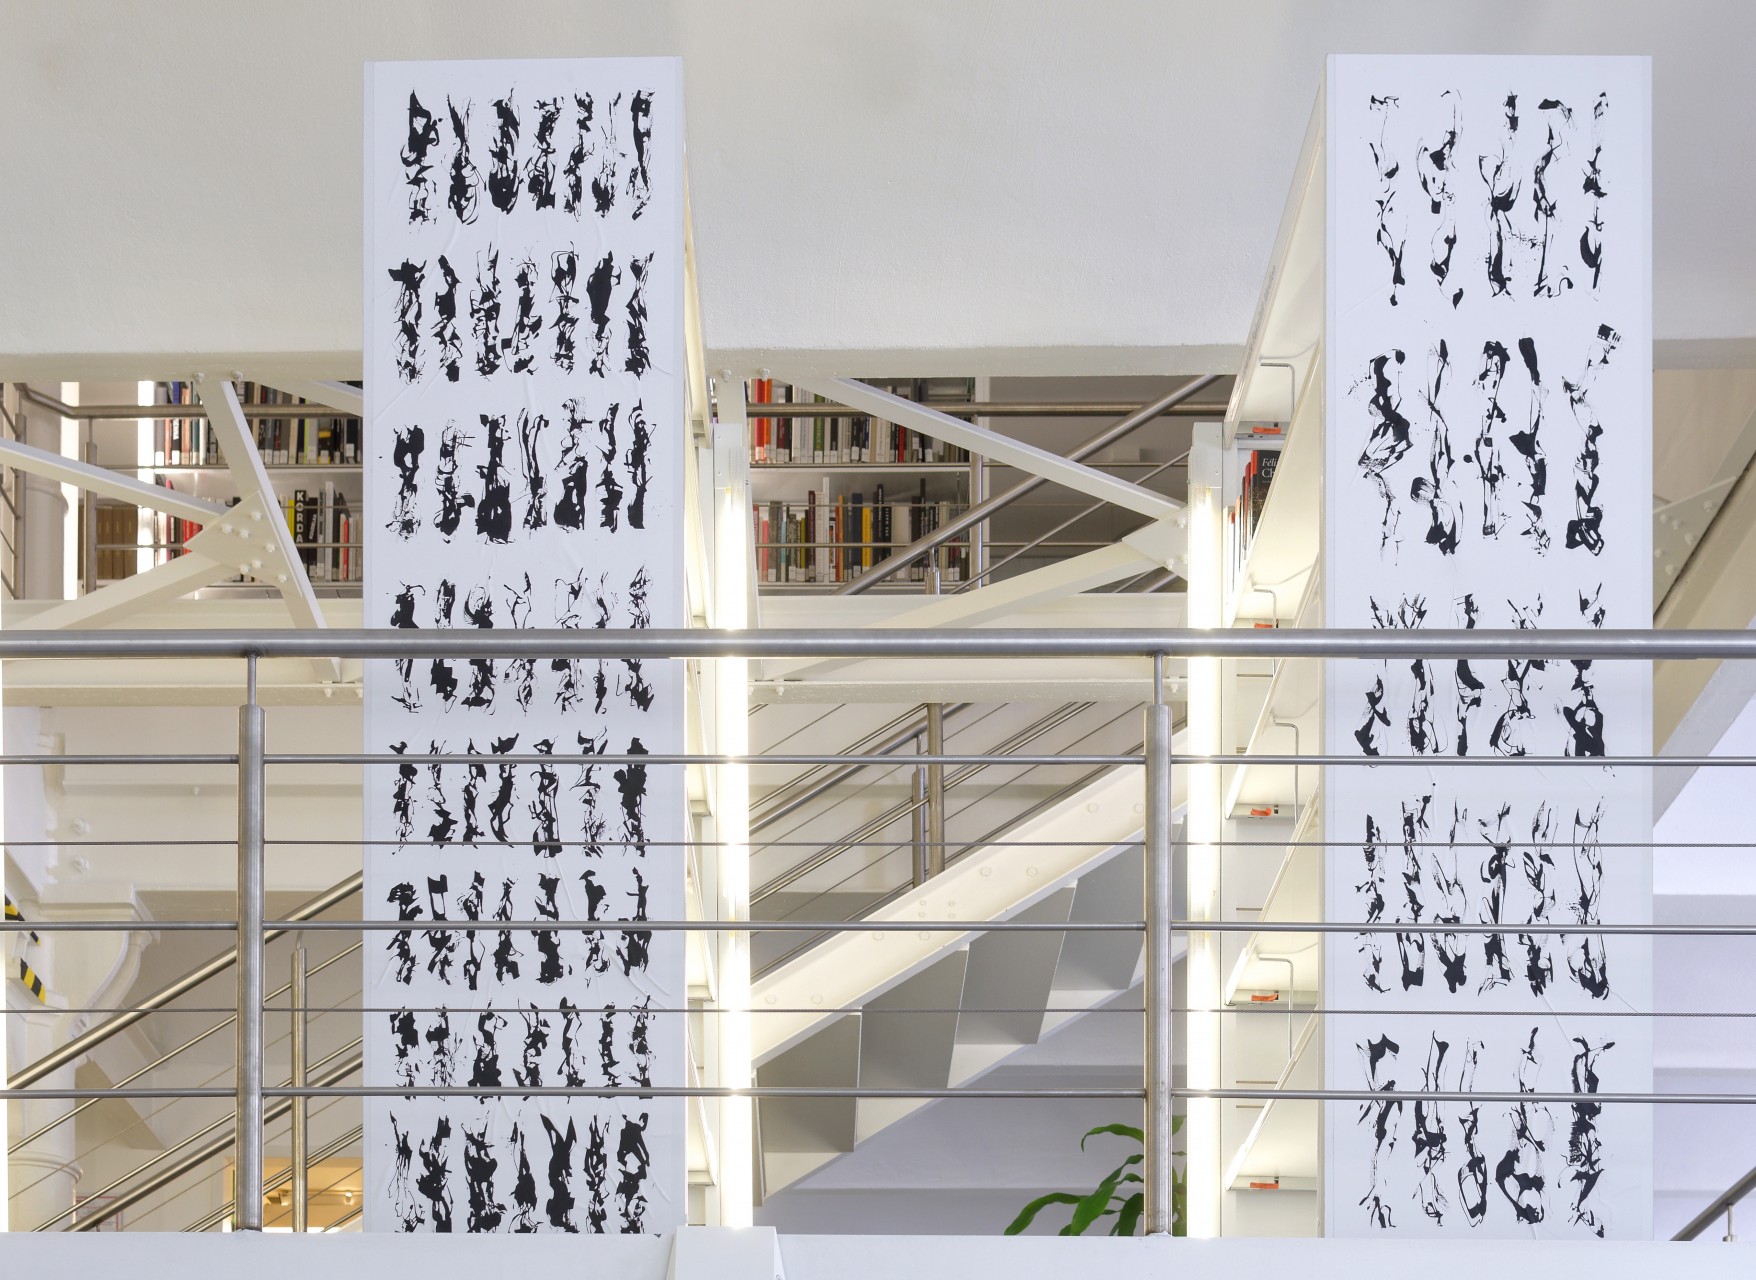 Bibliothek der unlesbaren Zeichen, Acryl auf Leinwand, je 50 x 200 cm, 2017